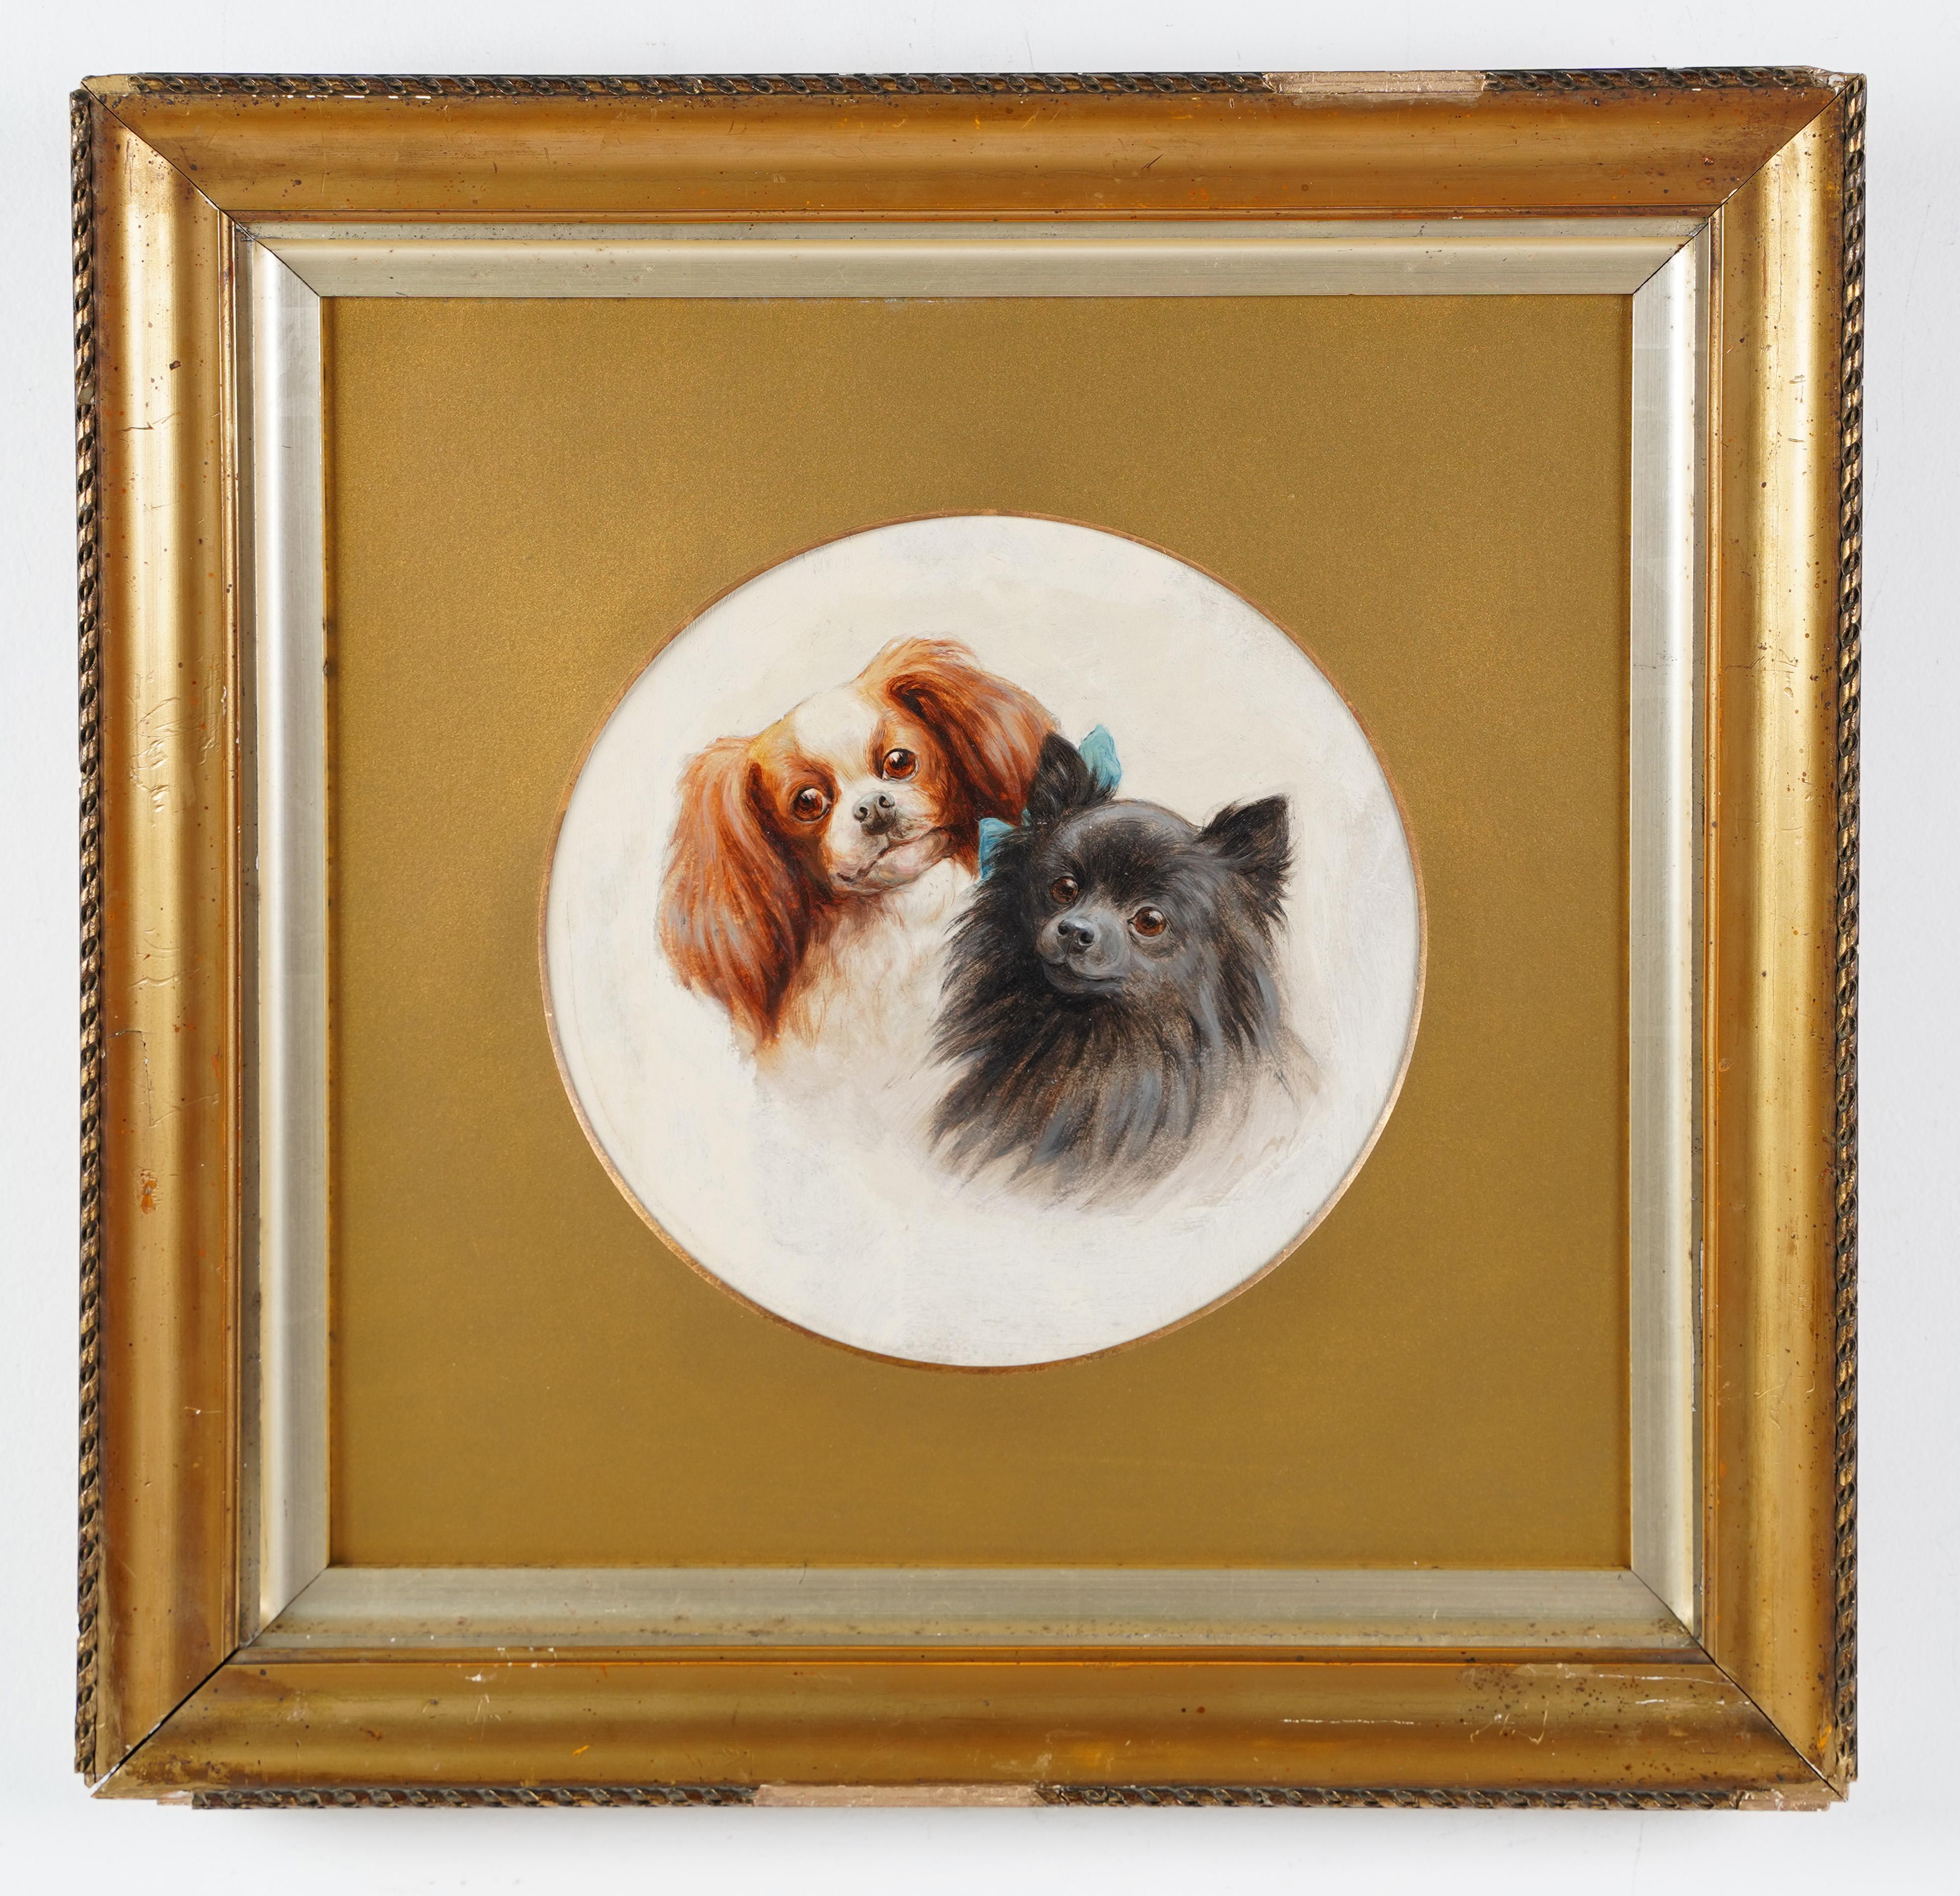  Portrait à l'huile du 19ème siècle encadré d'un portrait de chien d'exposition de l'école américaine - Réalisme Painting par Unknown